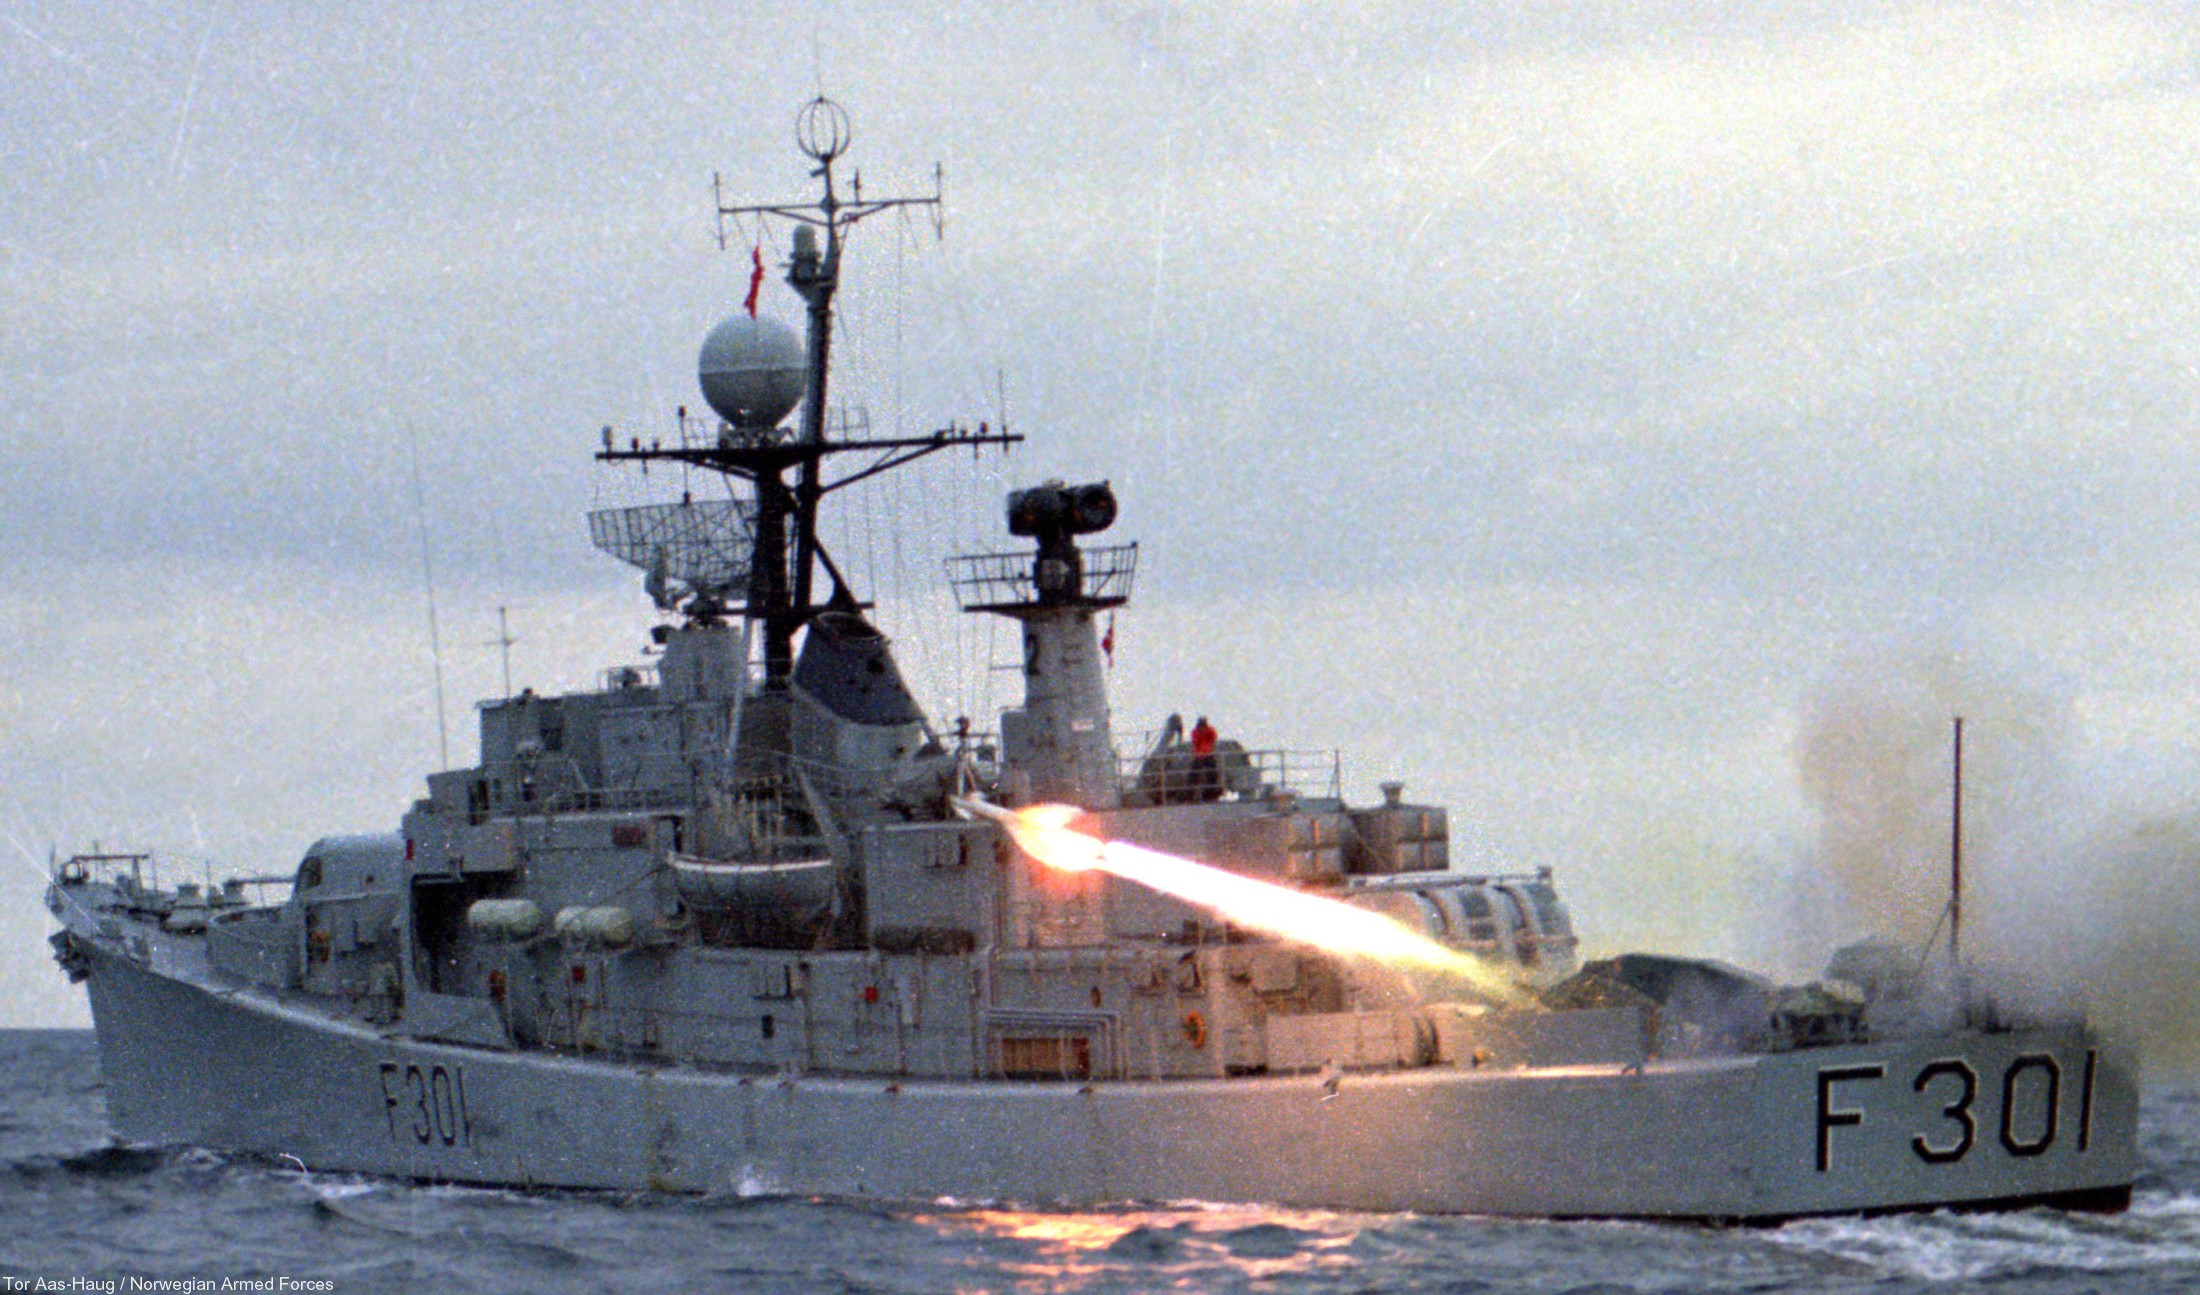 f-301 hnoms bergen knm oslo class frigate royal norwegian navy sjoforsvaret 09 agm-119 penguin ssm missile